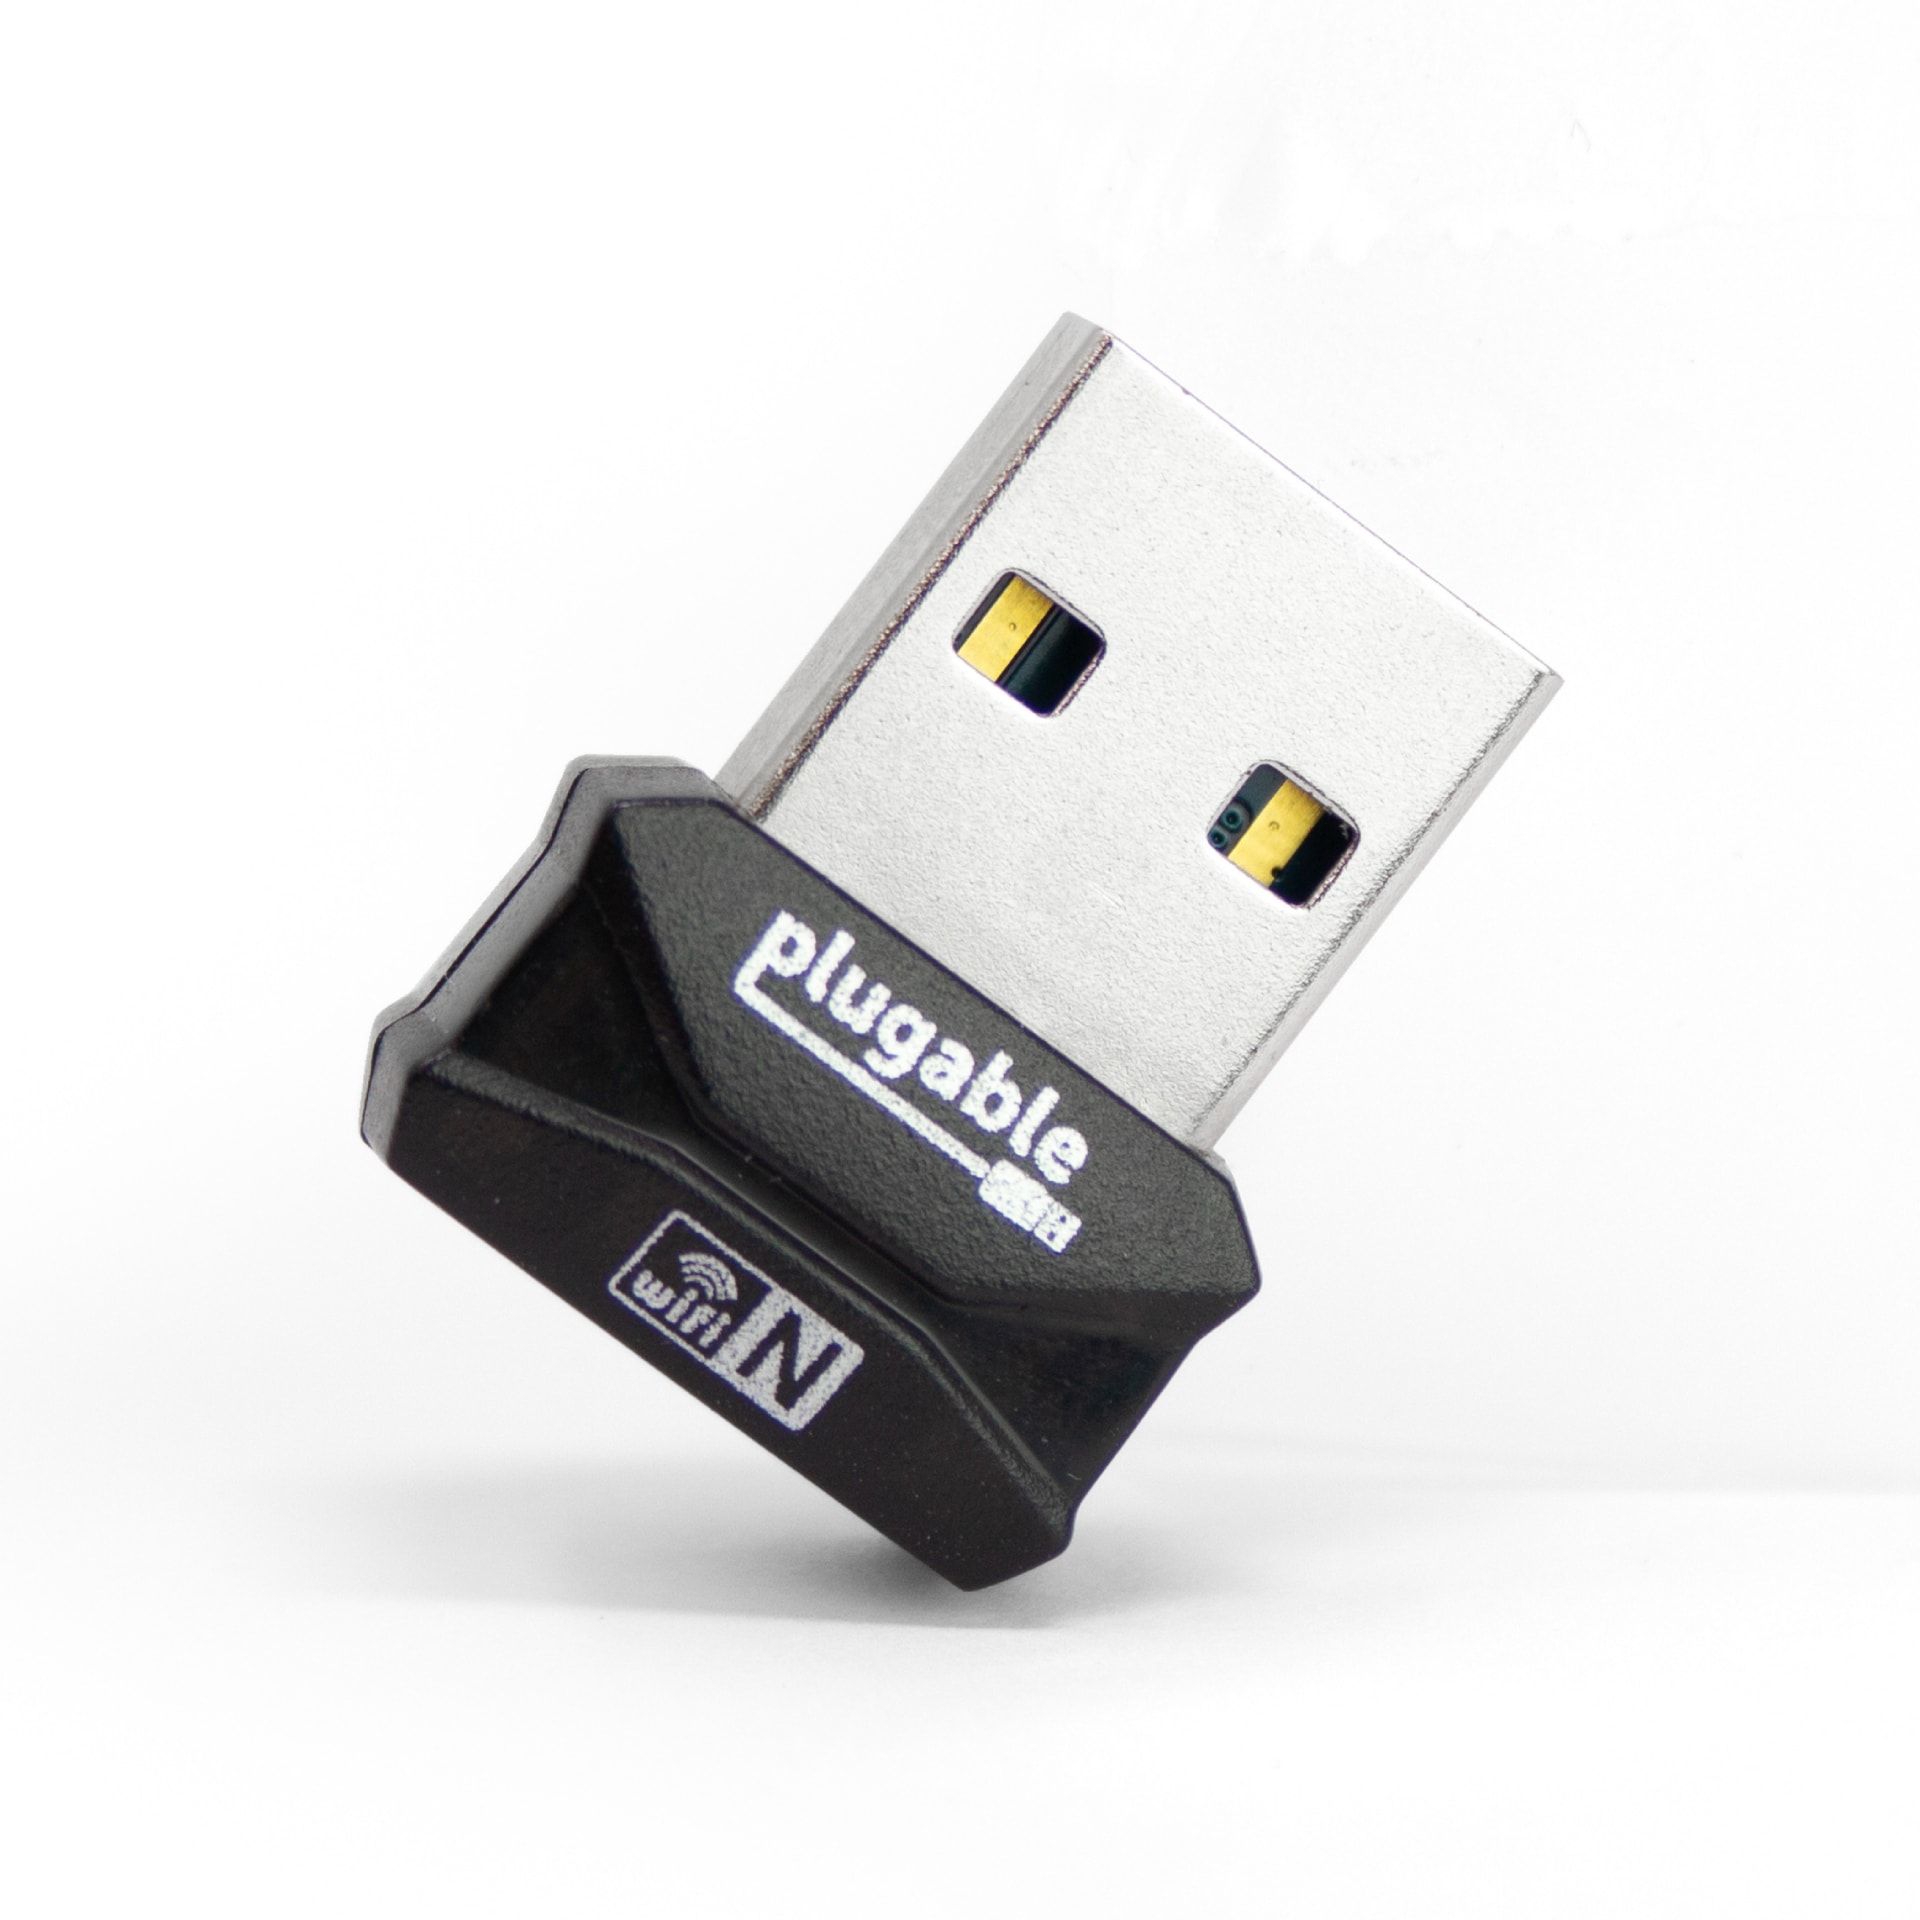 Plugable Micro Wifi Adapter -USB to Wireless 802.11n,Mac and Win,Driverless